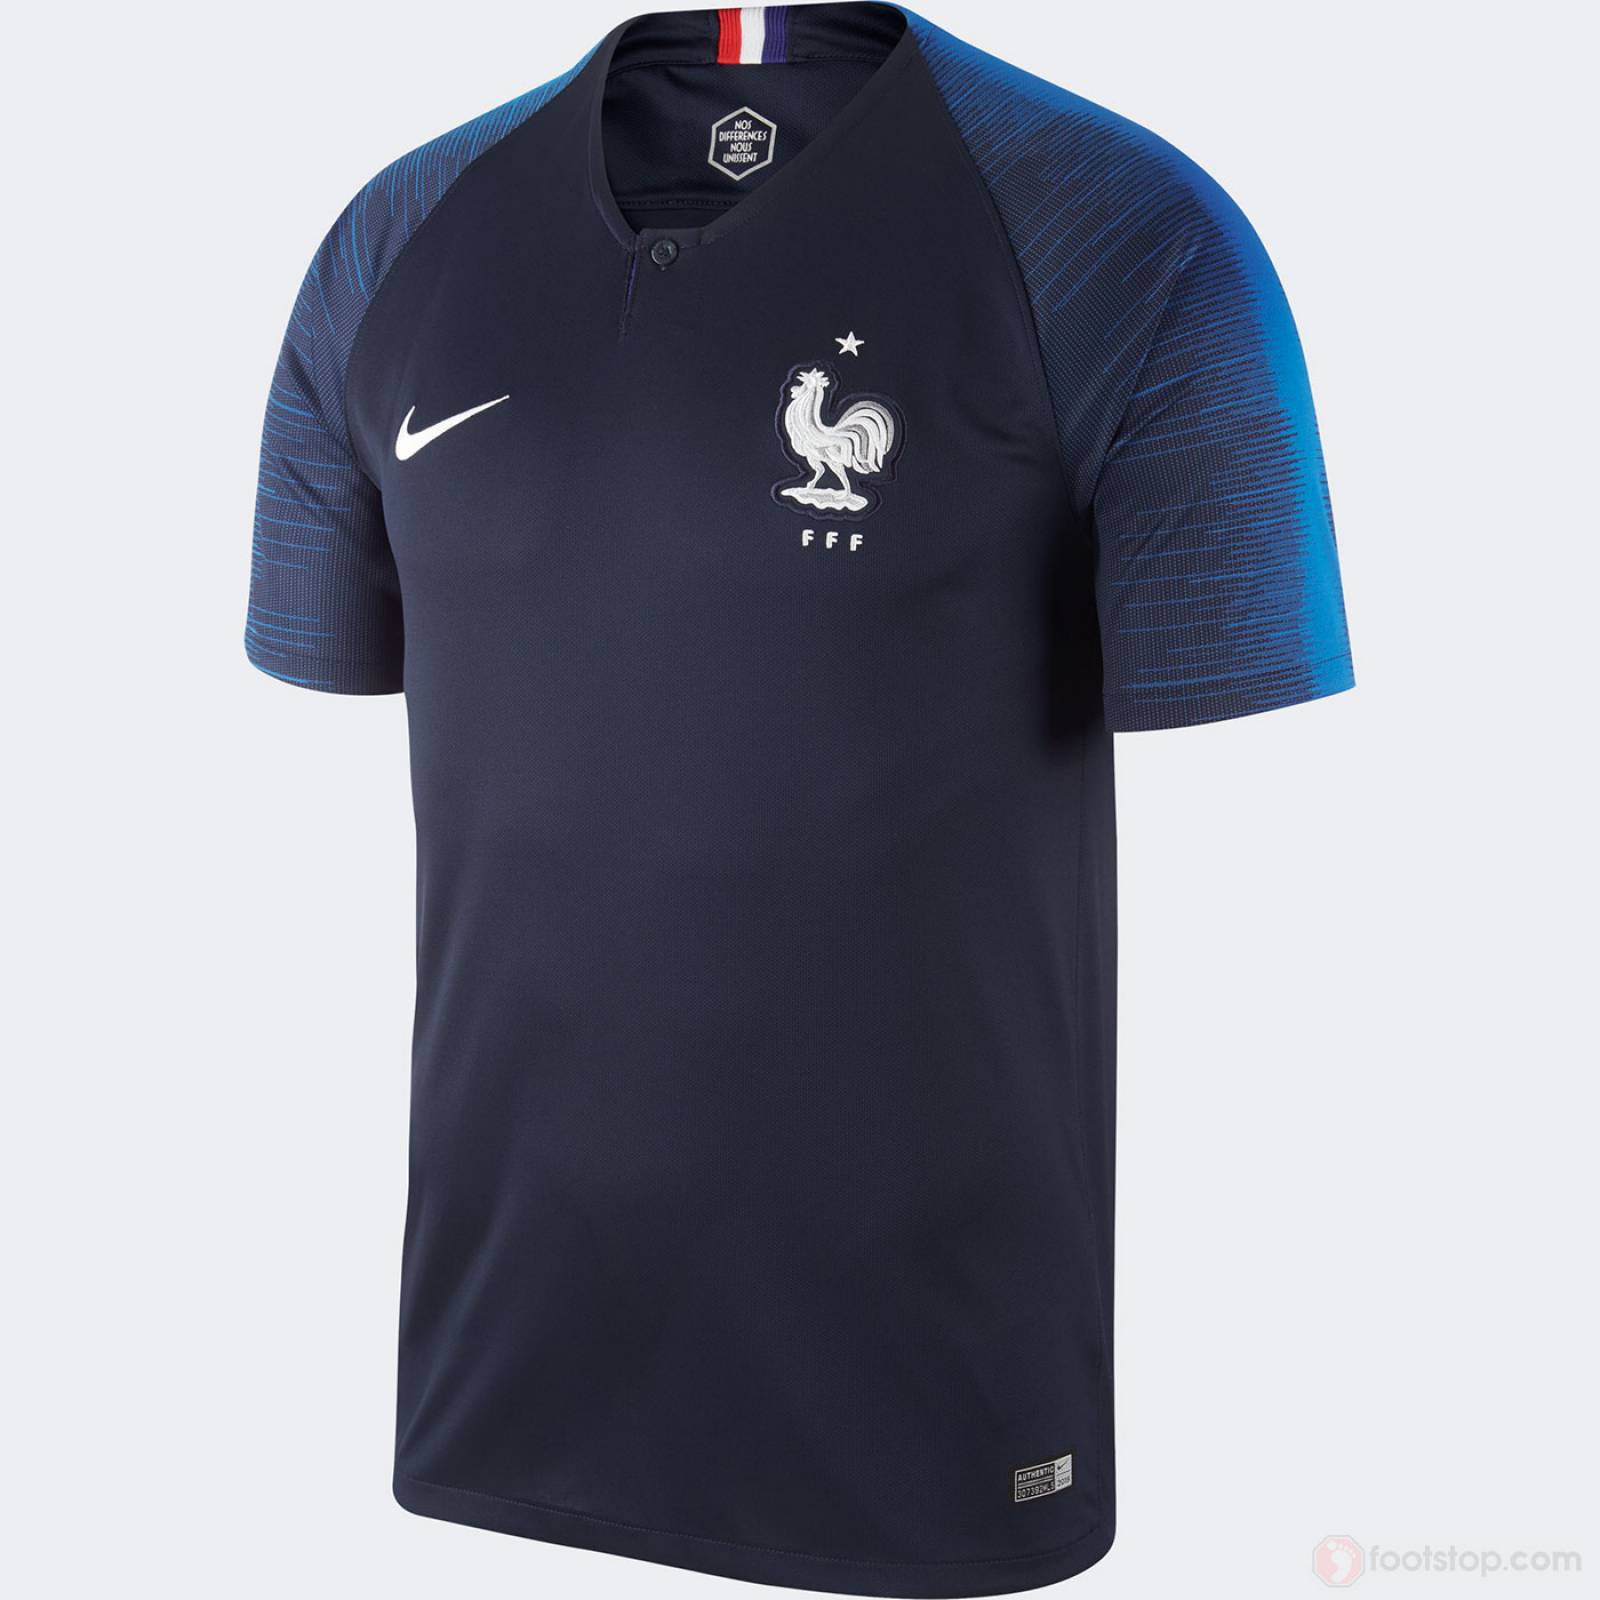 Jersey Selección Francia local 2018 código: 893872-451